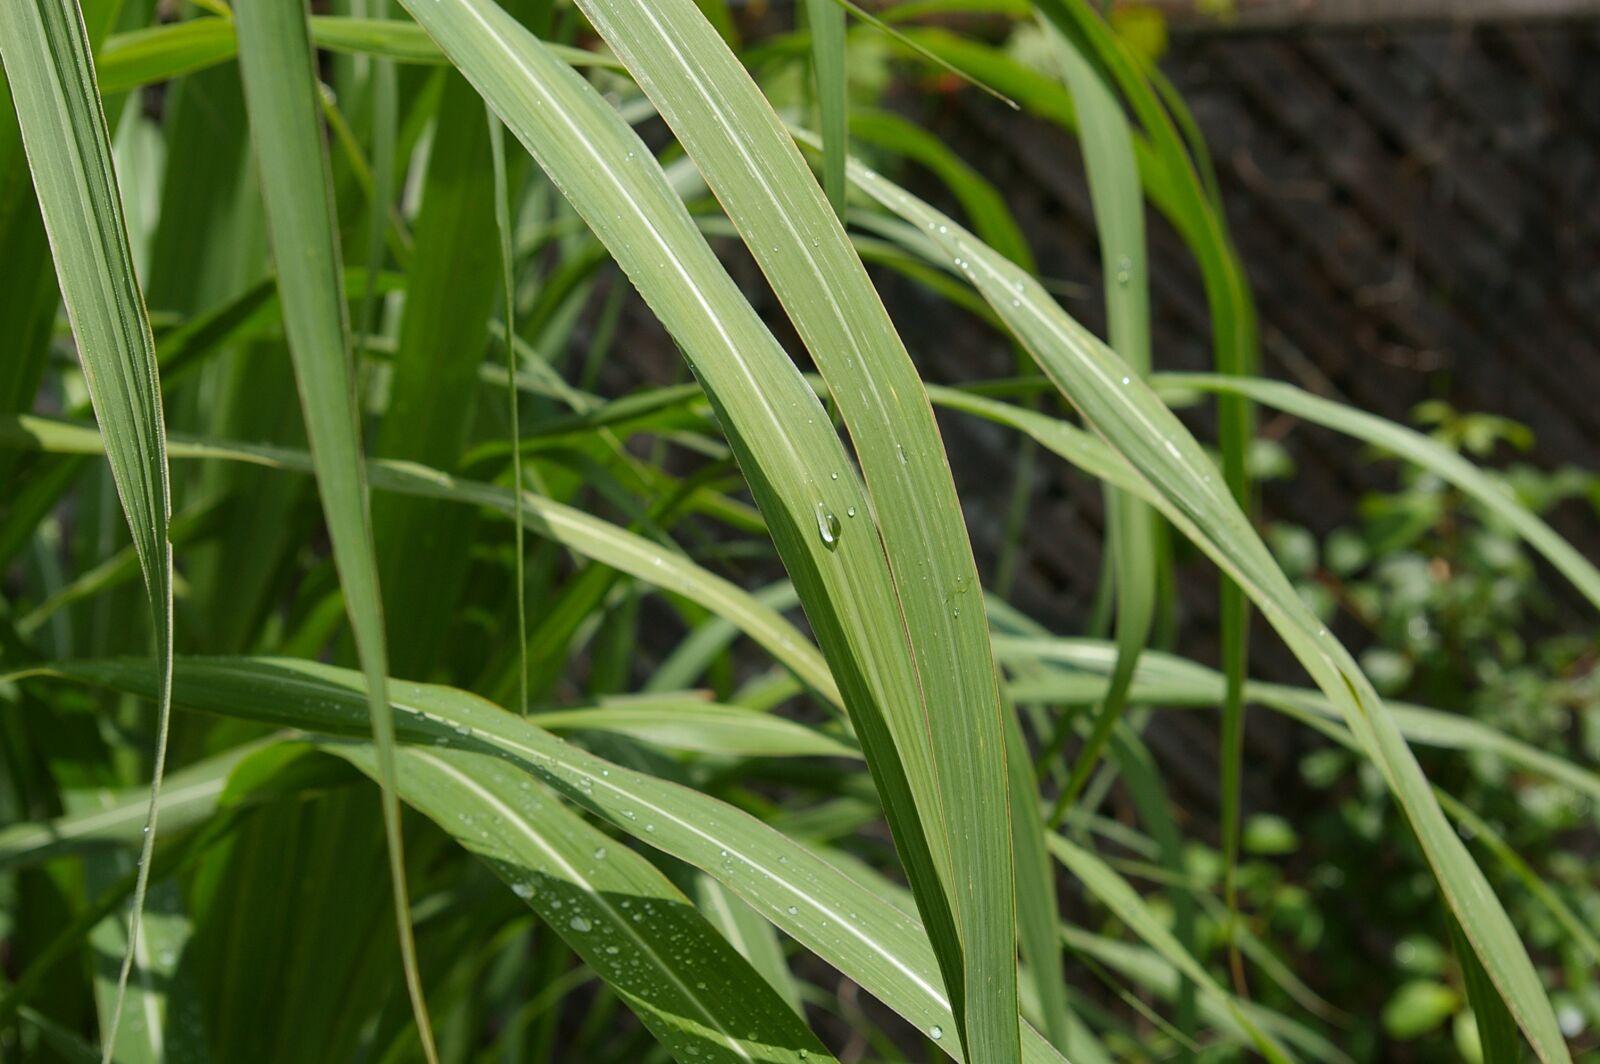 Pentax *ist DL sample photo. Zen, tall grass, water photography